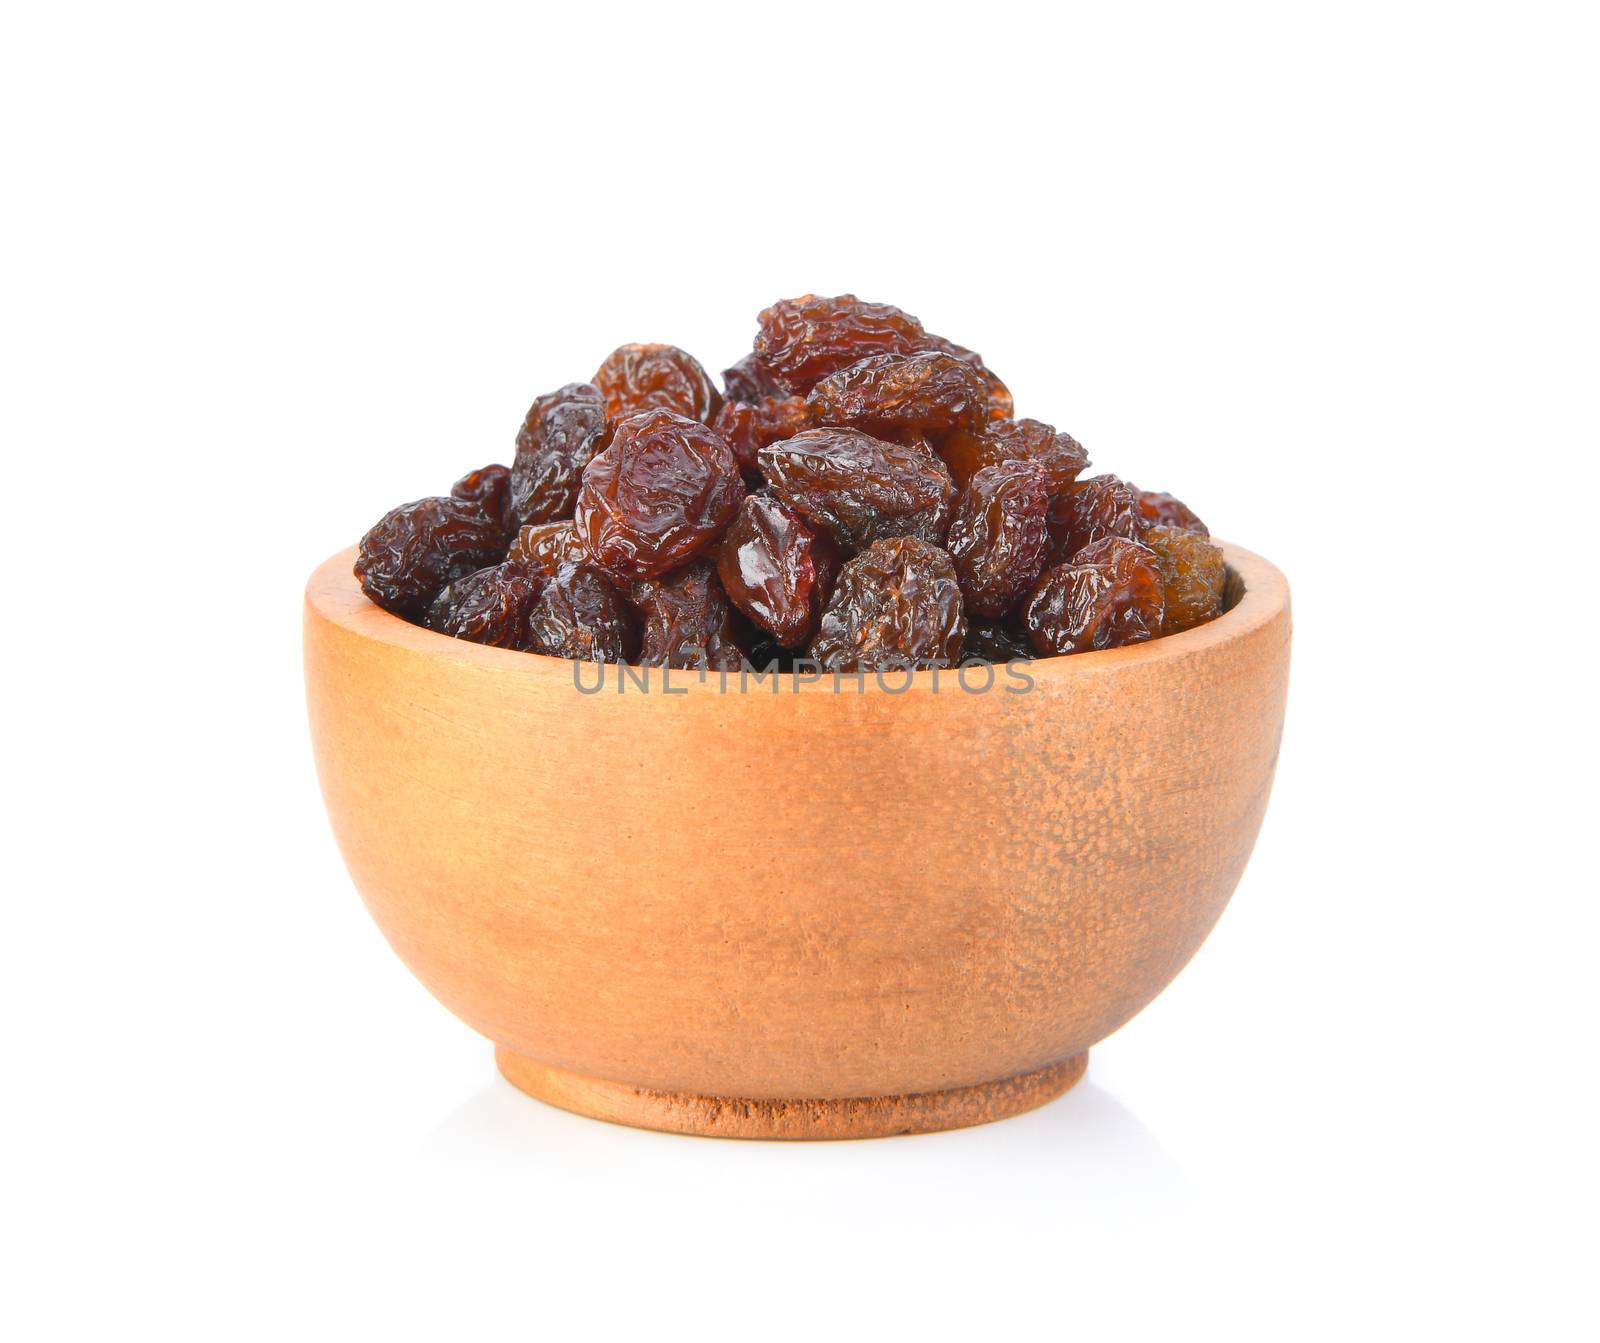 raisin on wood bowl isolated on white background